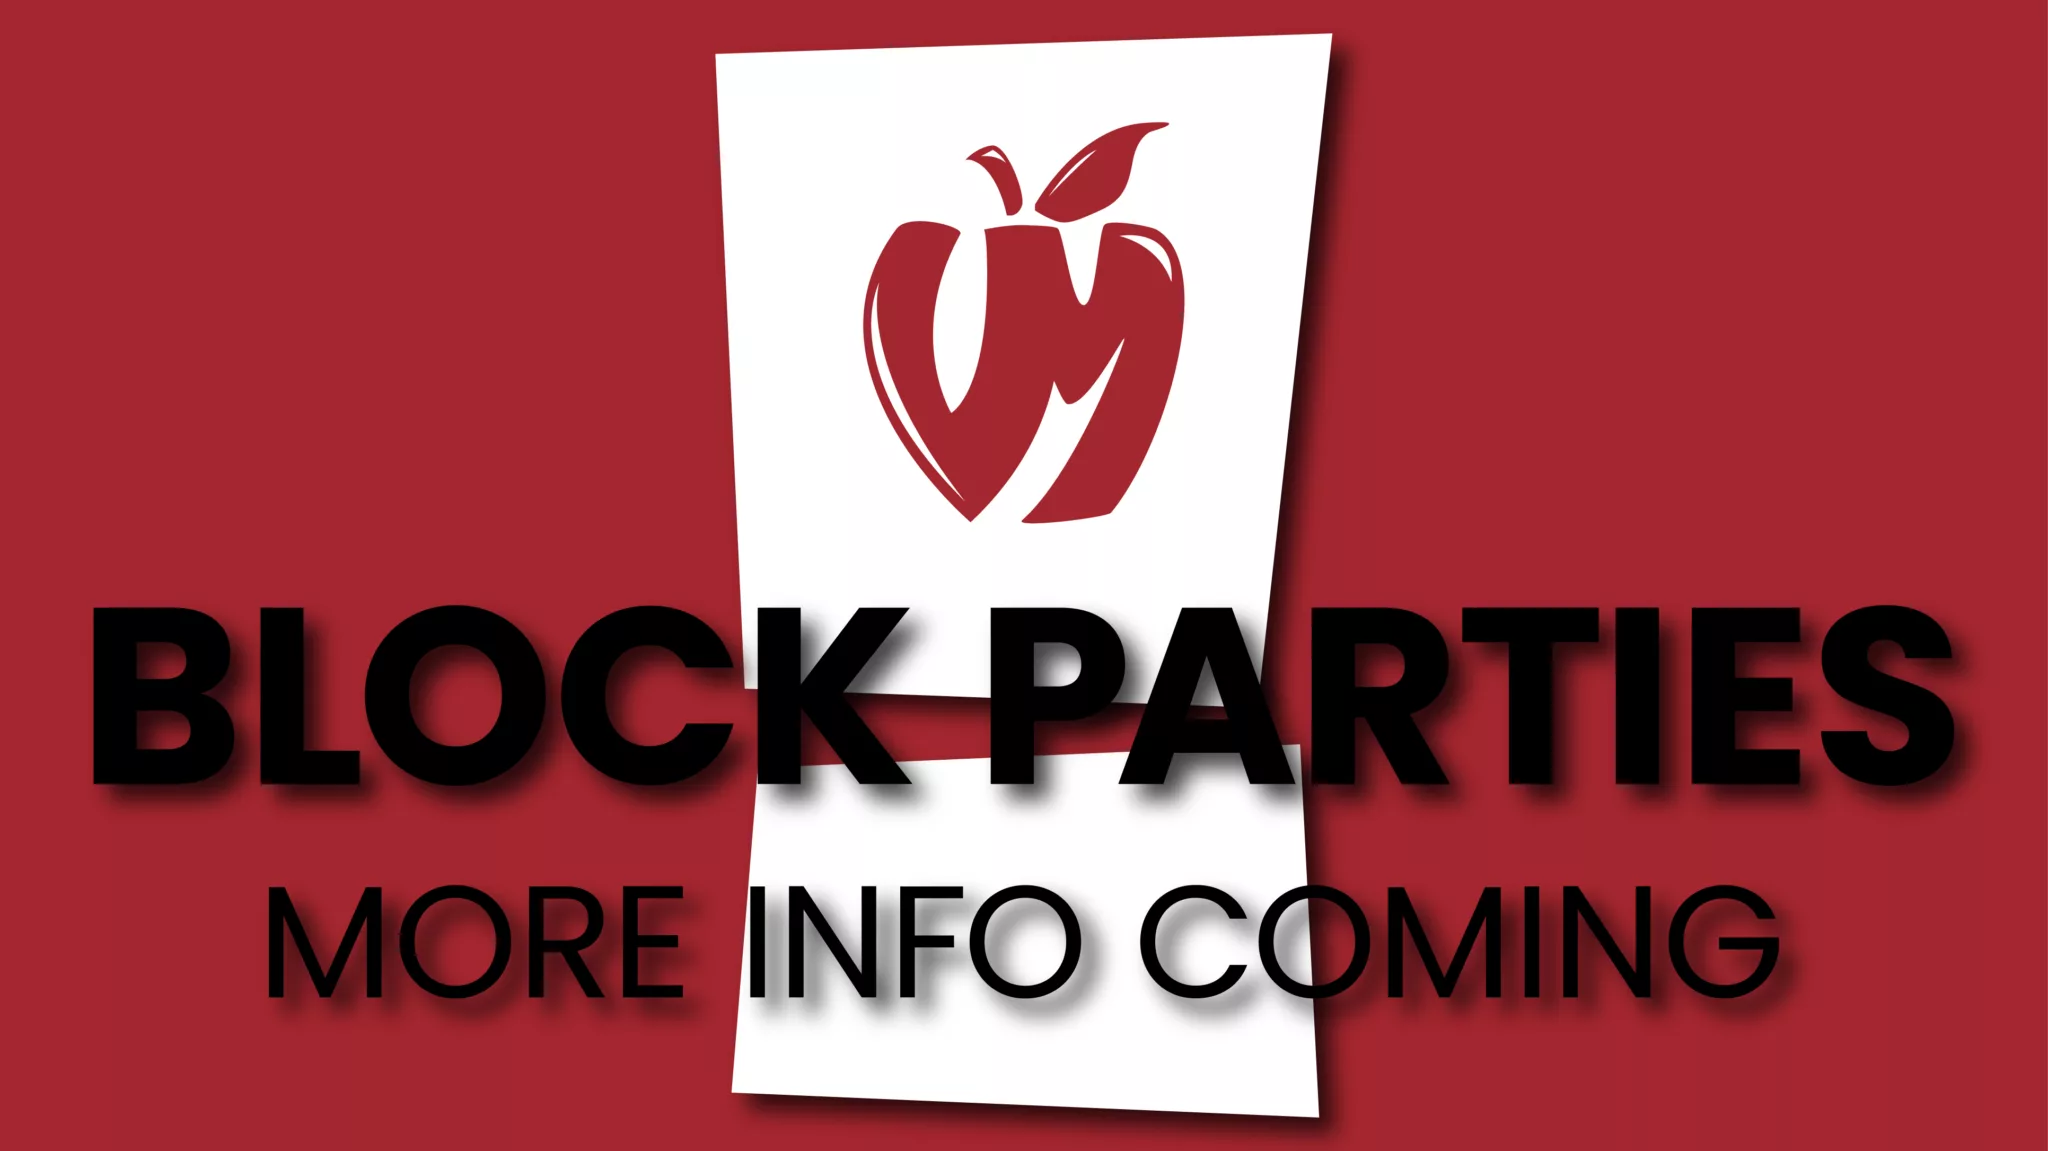 Vander Mill Block Parties More Info Coming